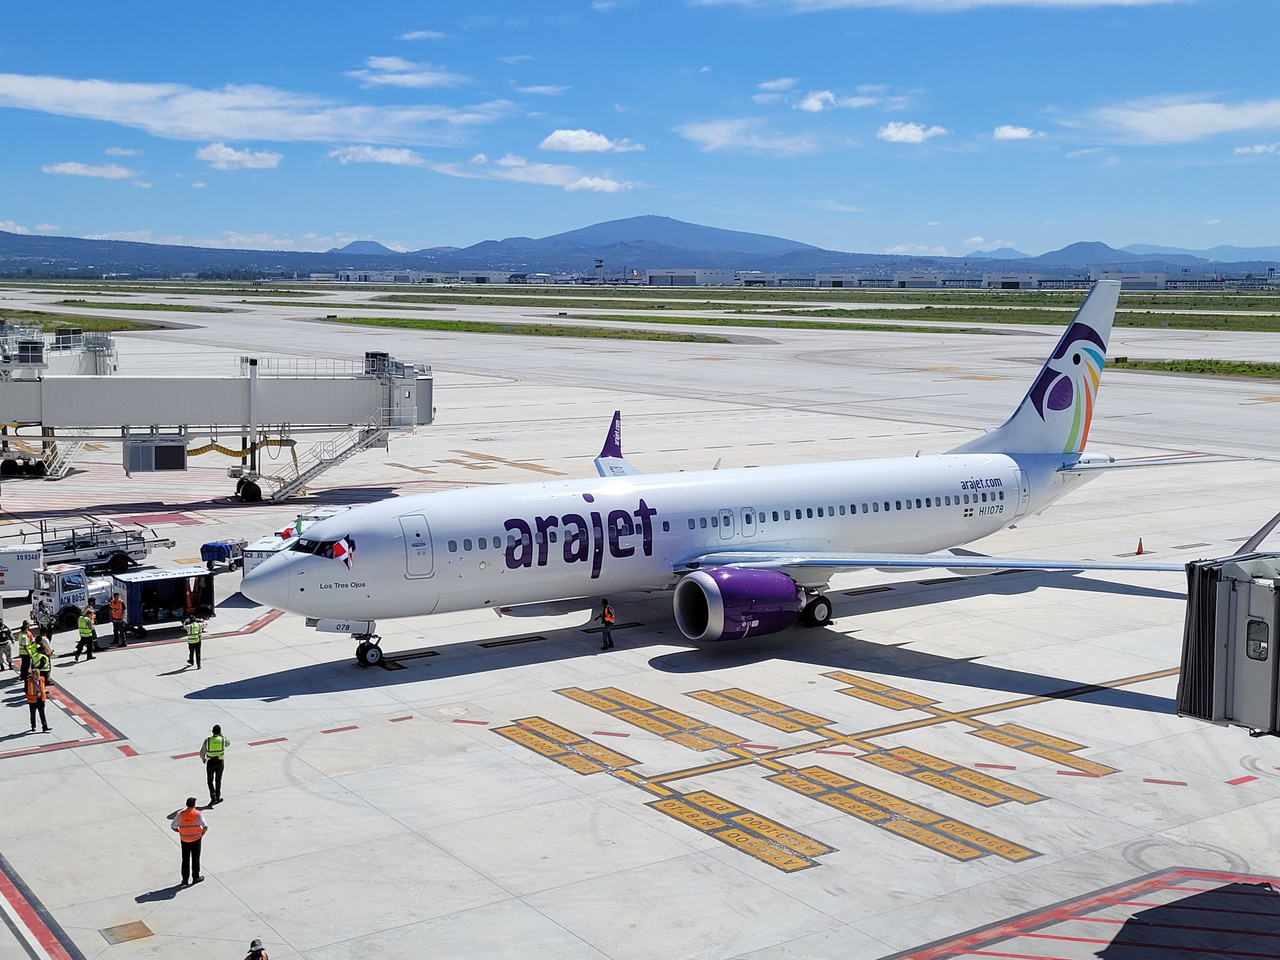 La aerolínea dominicana Arajet ya tiene una ruta desde el Aeropuerto Internacional Felipe Ángeles